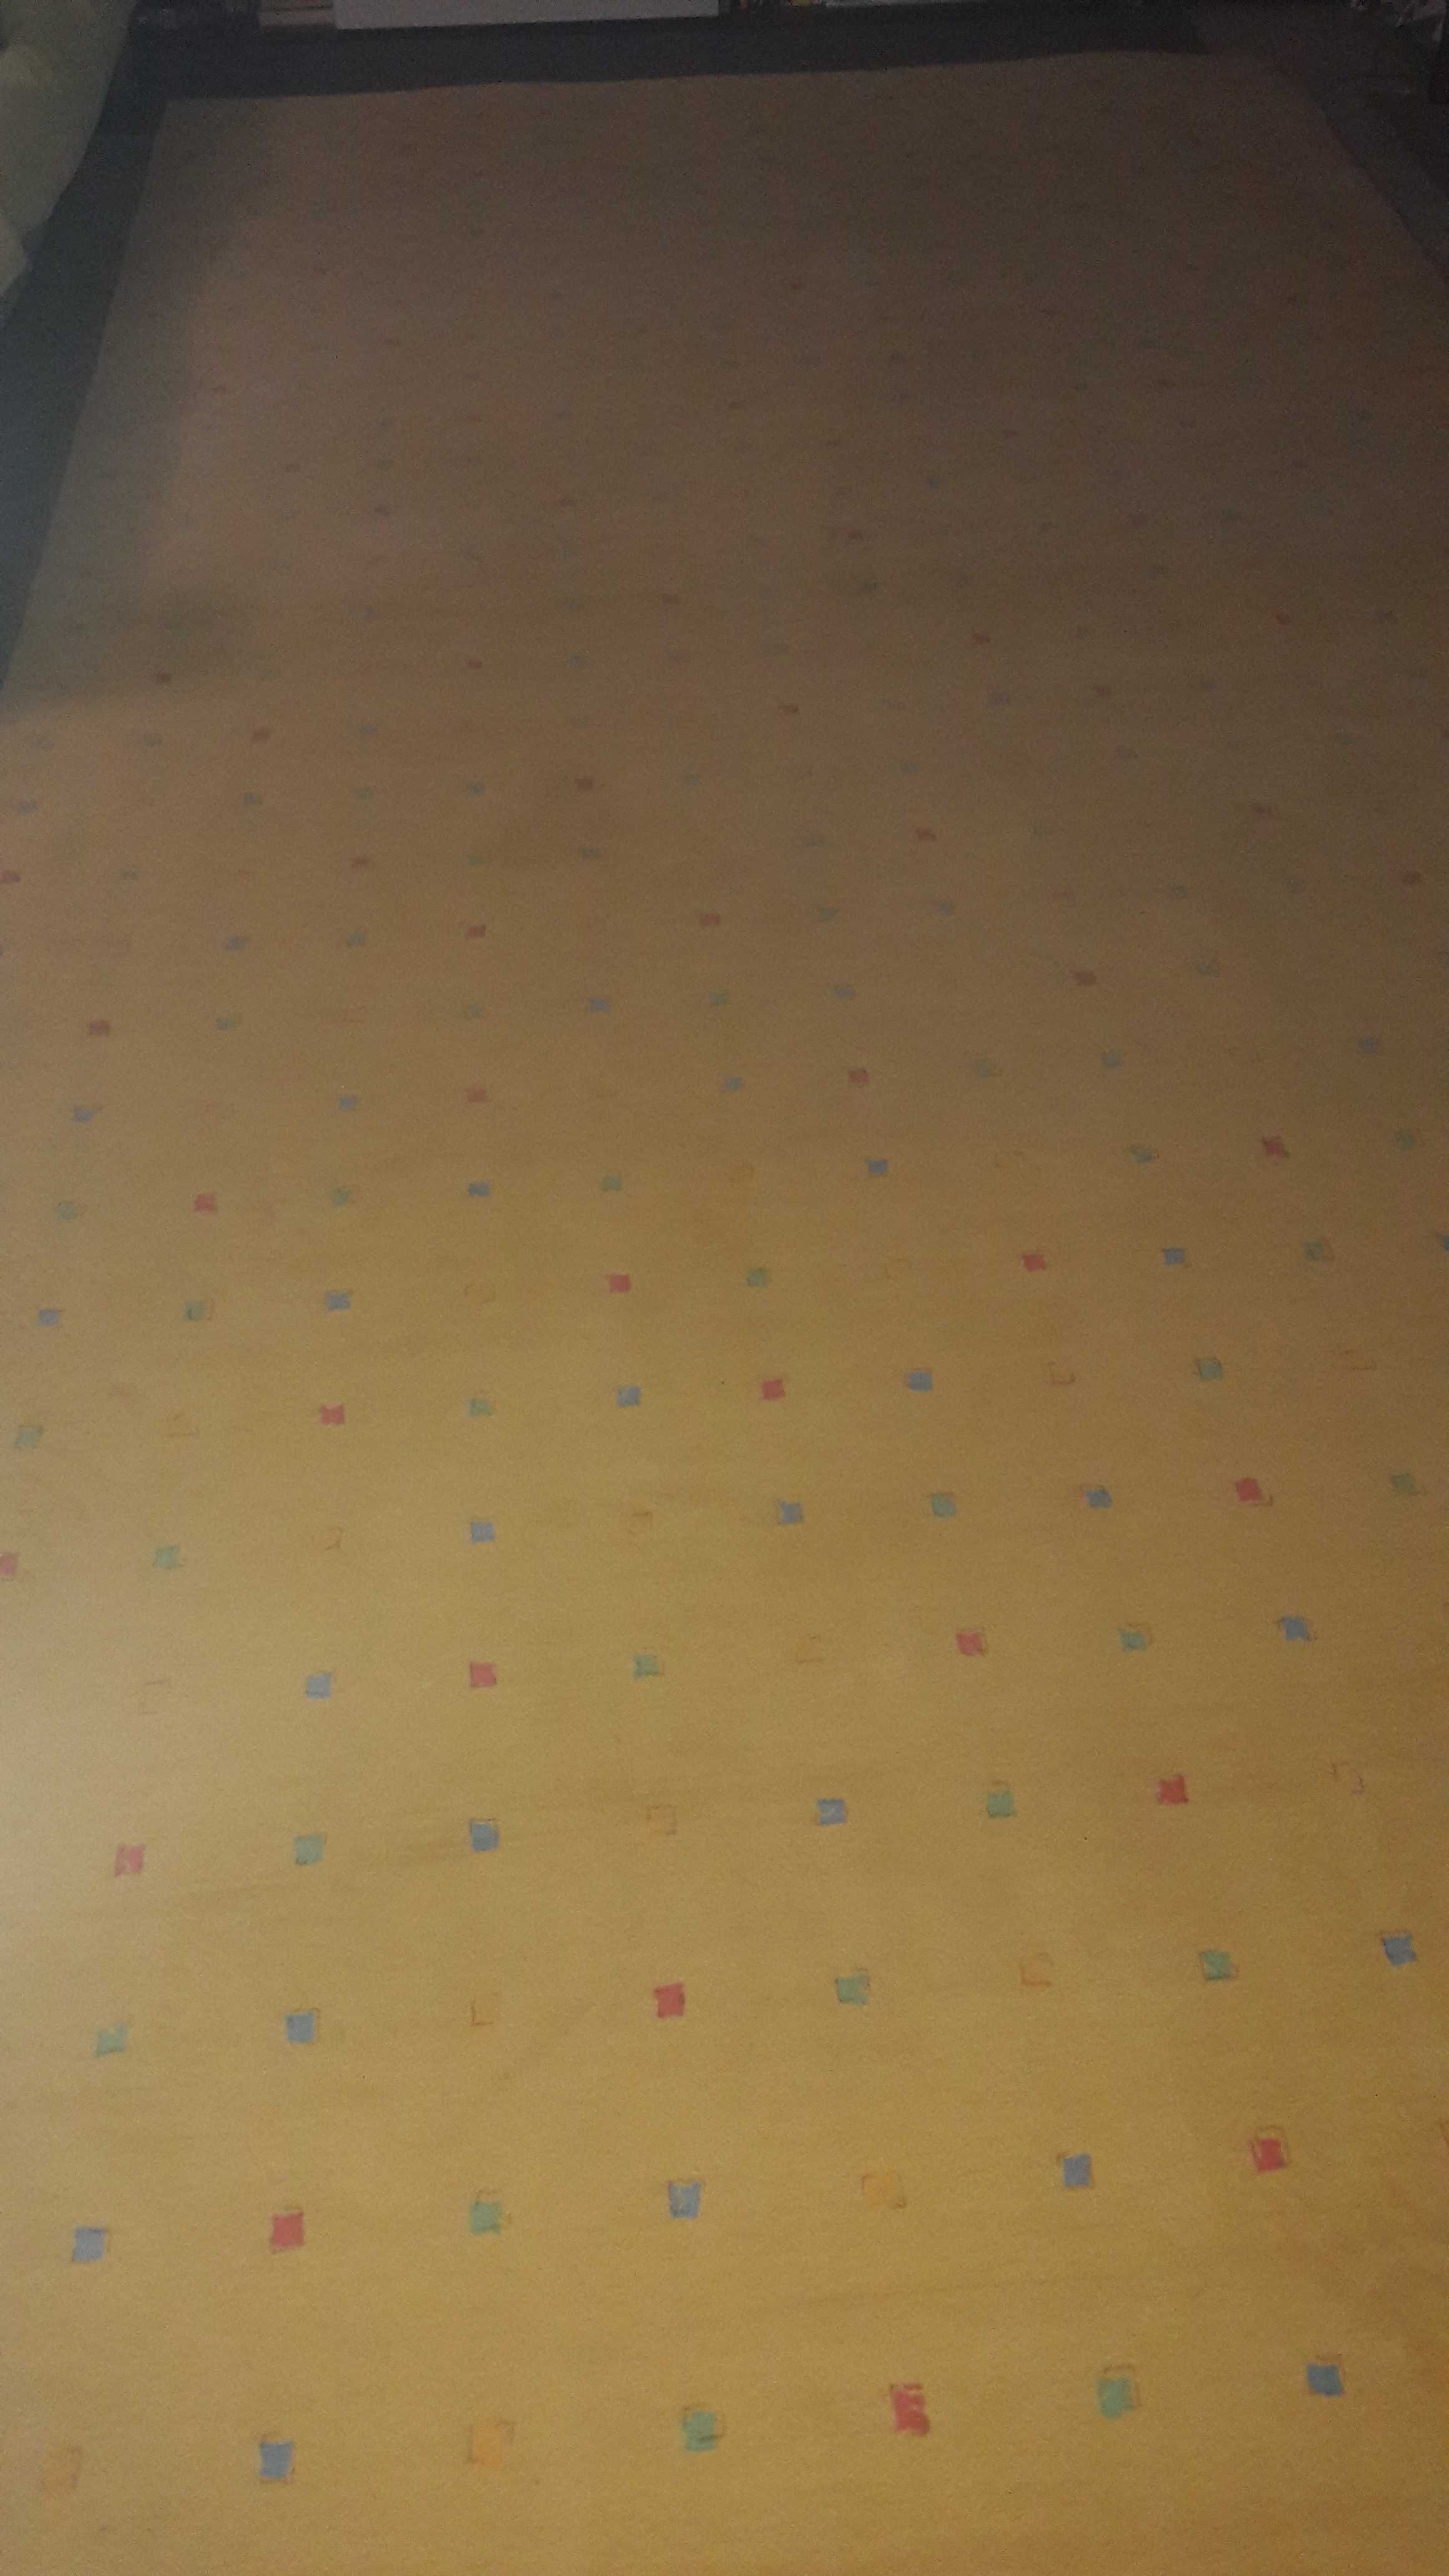 Żółta wykładzina dywanowa w kwadraciki